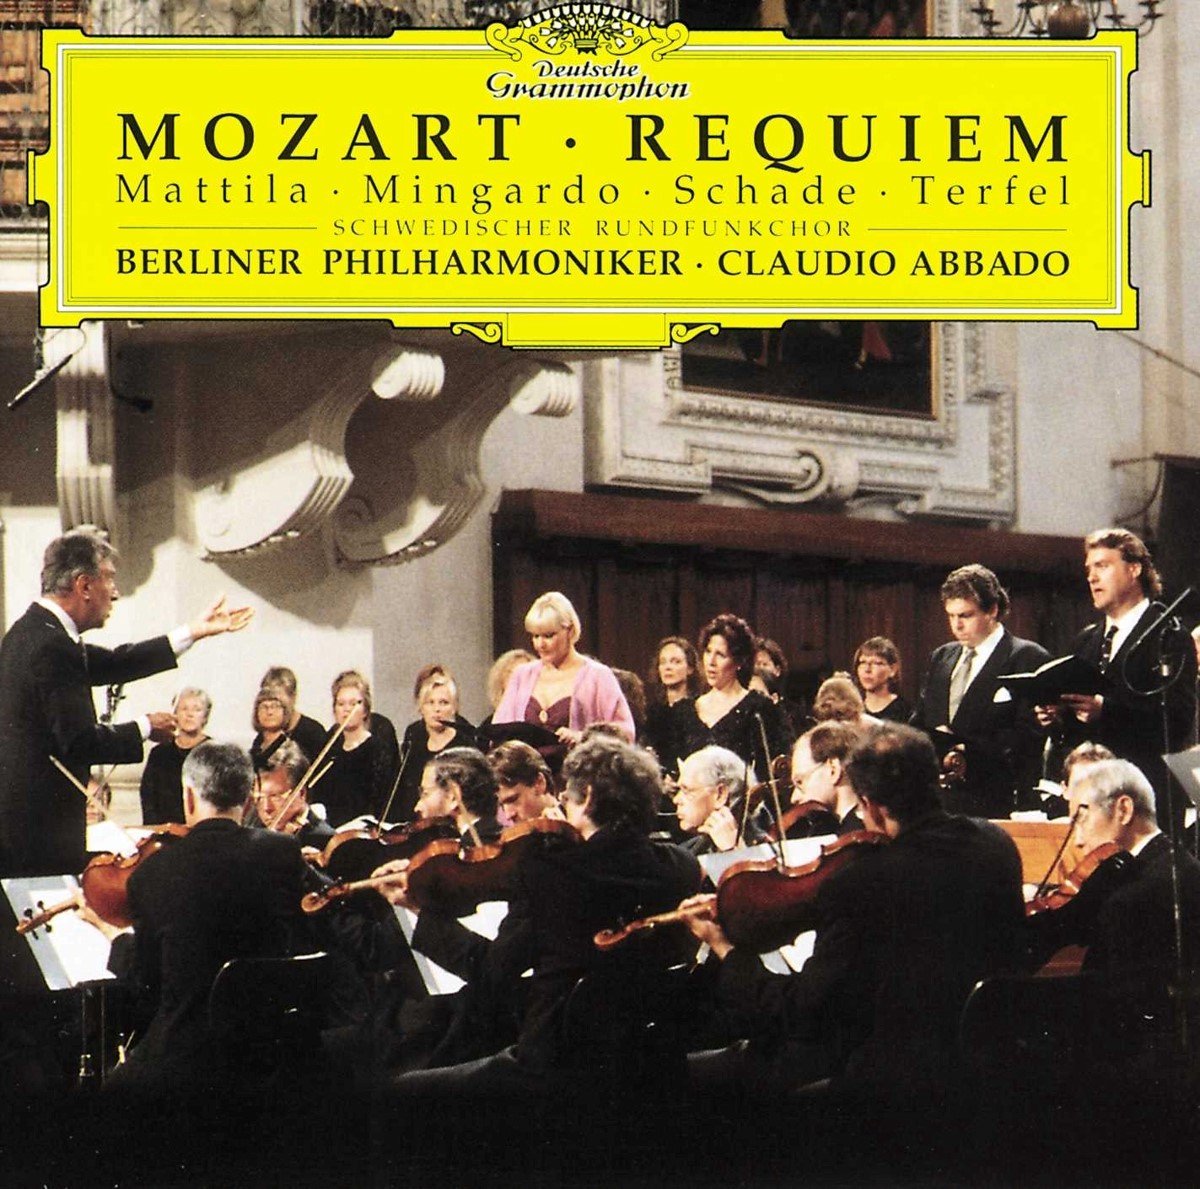 Berliner Philharmoniker, Claudio Abbado - Mozart: Requiem/Laudate Dominum/Grabmusik (CD) - Berliner Philharmoniker, Claudio Abbado